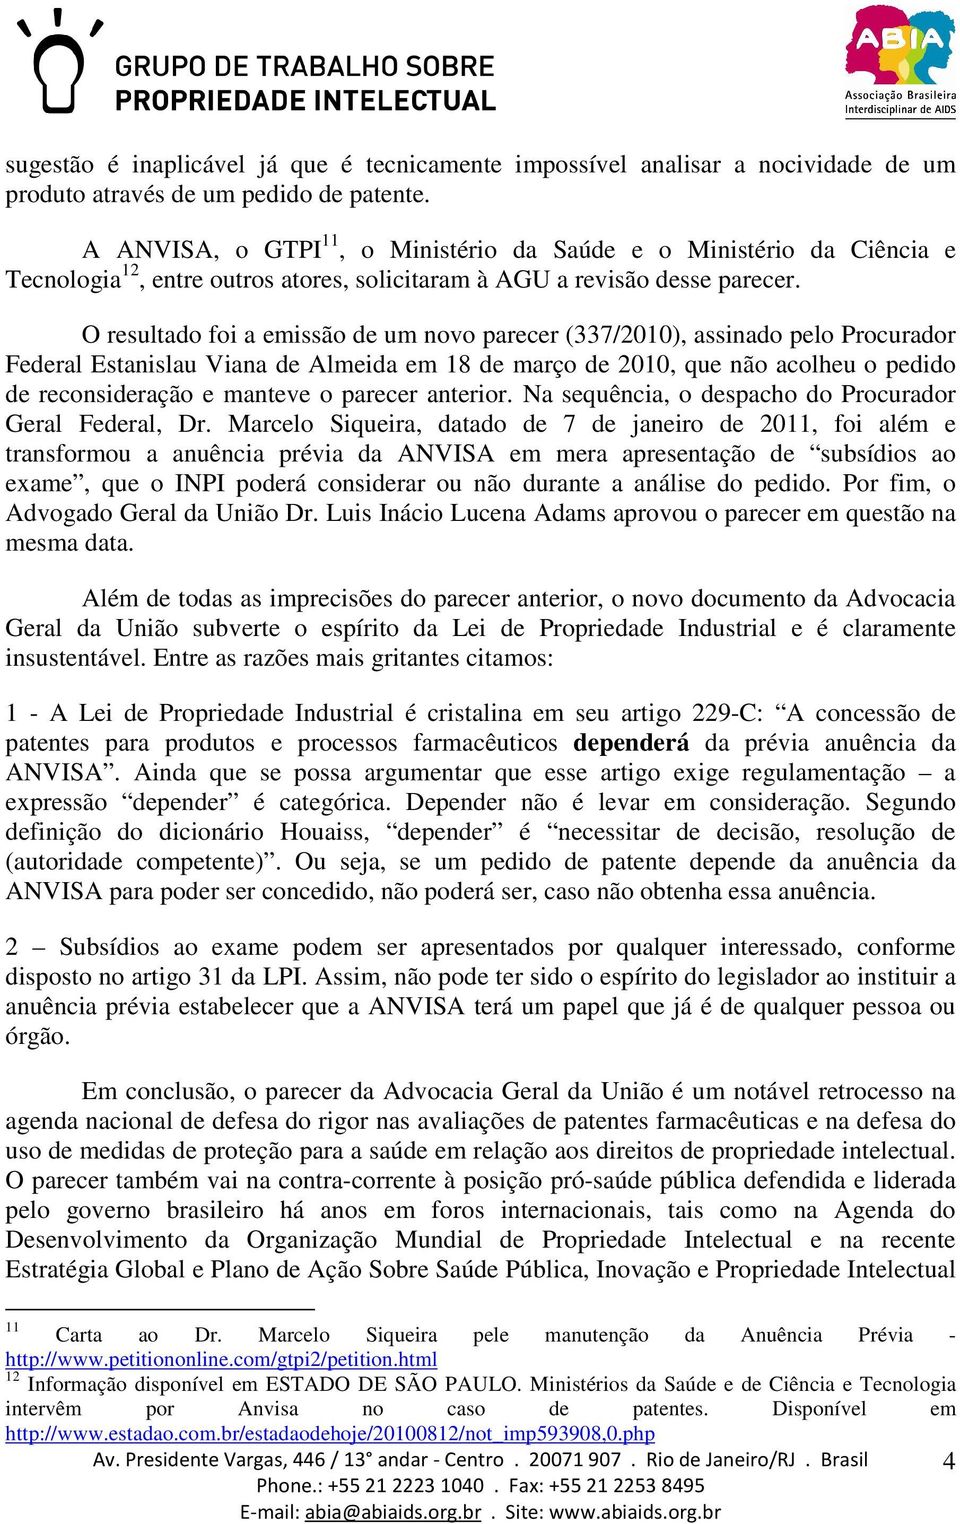 O resultado foi a emissão de um novo parecer (337/2010), assinado pelo Procurador Federal Estanislau Viana de Almeida em 18 de março de 2010, que não acolheu o pedido de reconsideração e manteve o